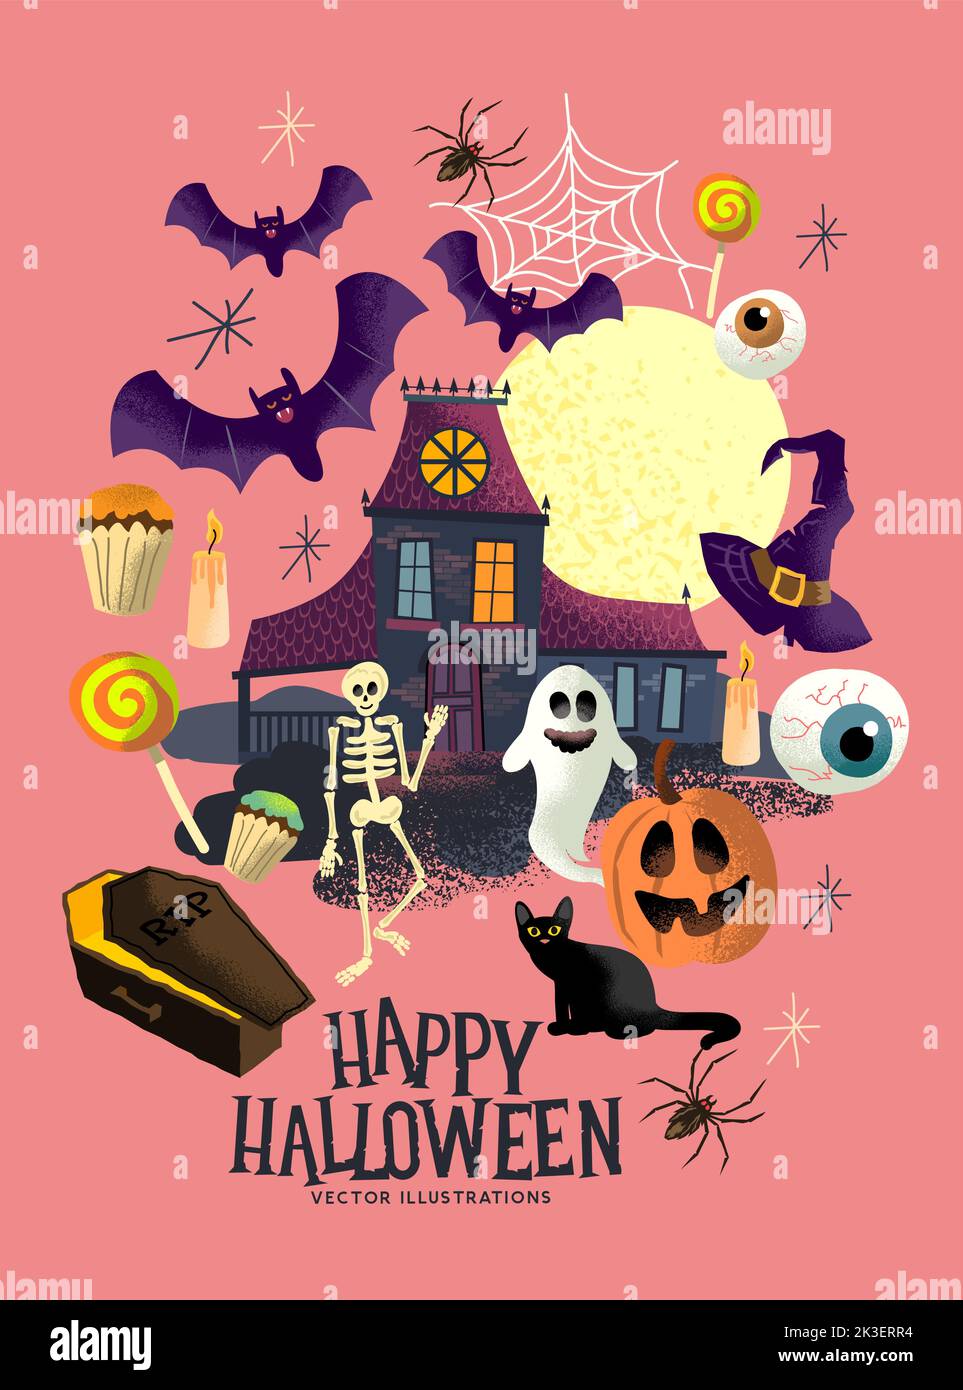 Una colección de trucos o tratar a los personajes y objetos de los eventos de Halloween con fantasmas, calabazas y una casa encantada. Ilustración del Vector